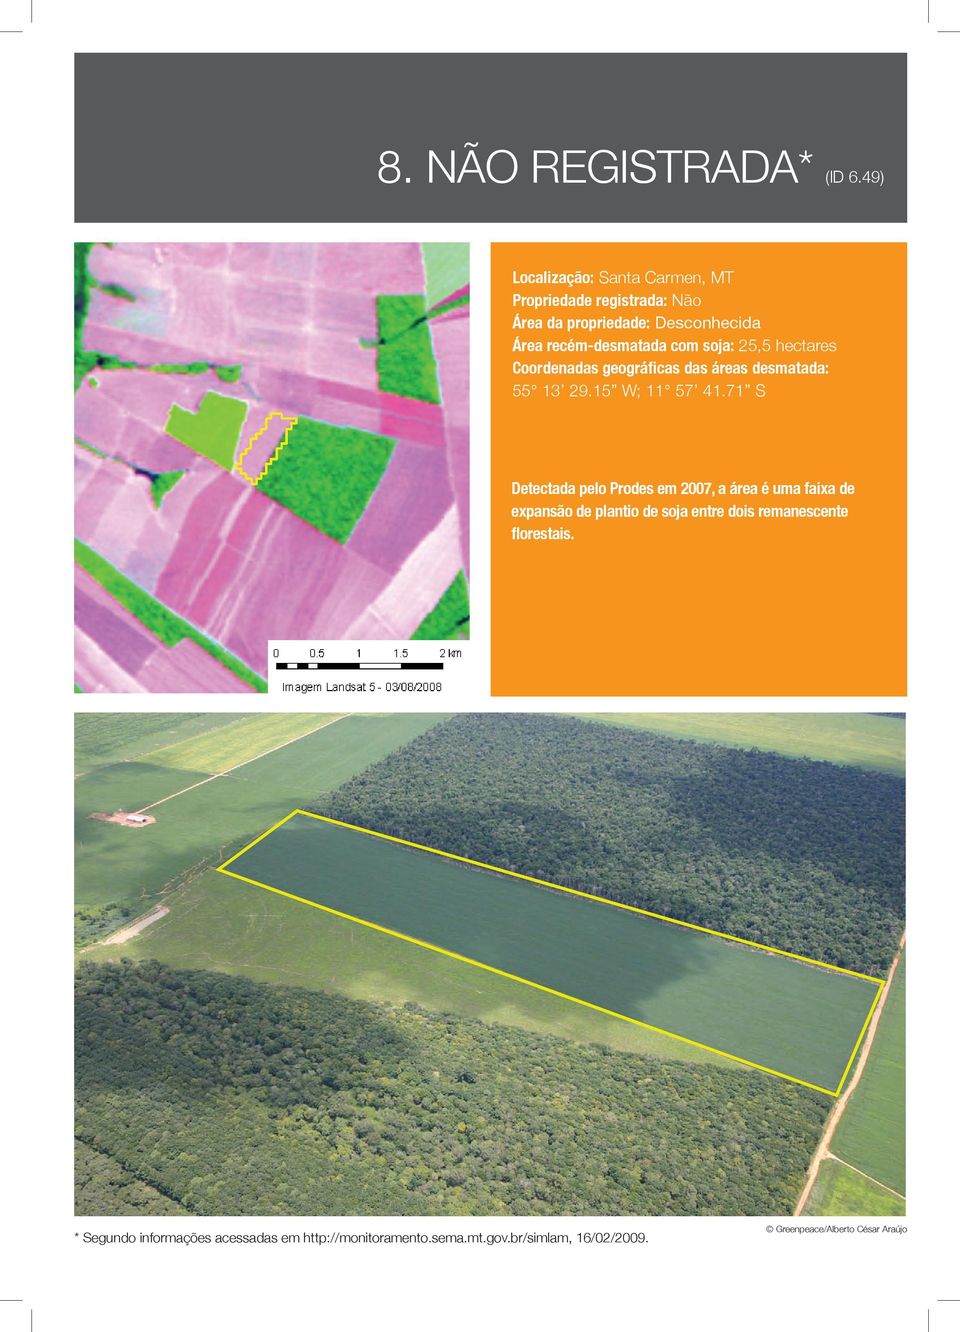 recém-desmatada com soja: 25,5 hectares Coordenadas geográficas das áreas desmatada: 55 13 29.15 W; 11 57 41.